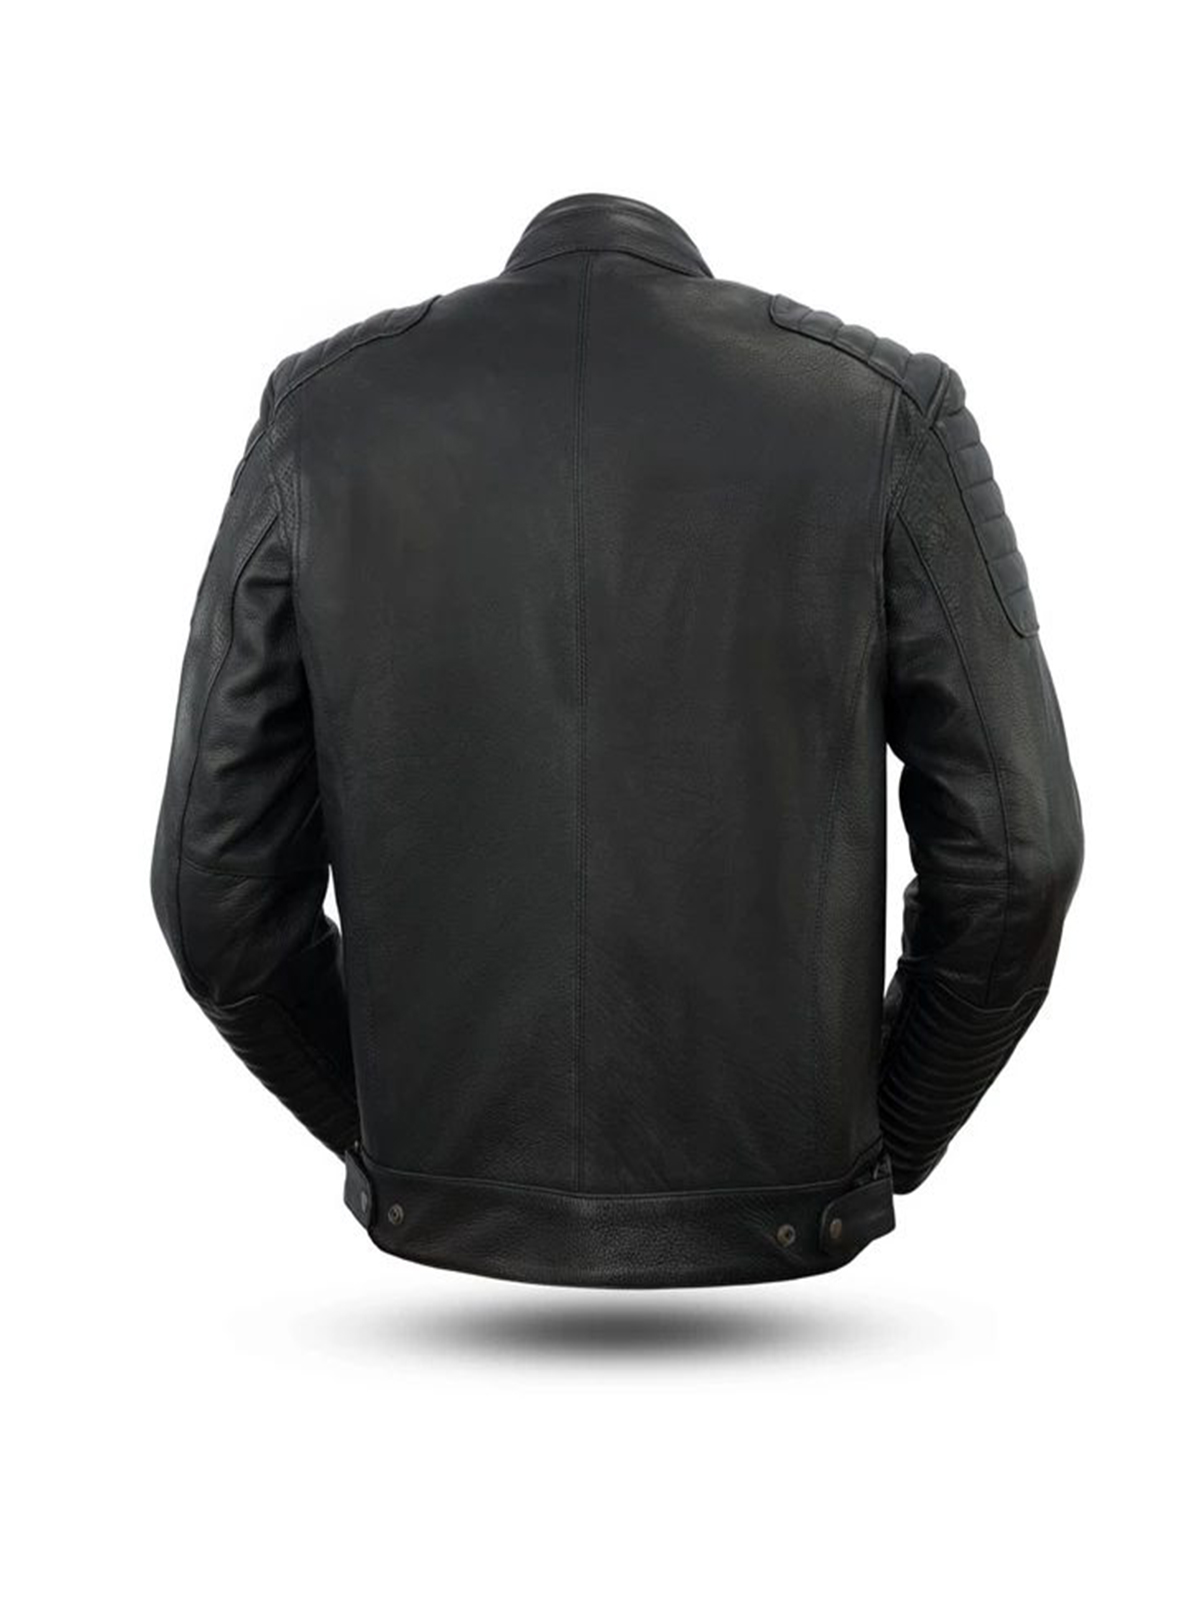 Men’s Defender Black Leather Motorcycle Jacket